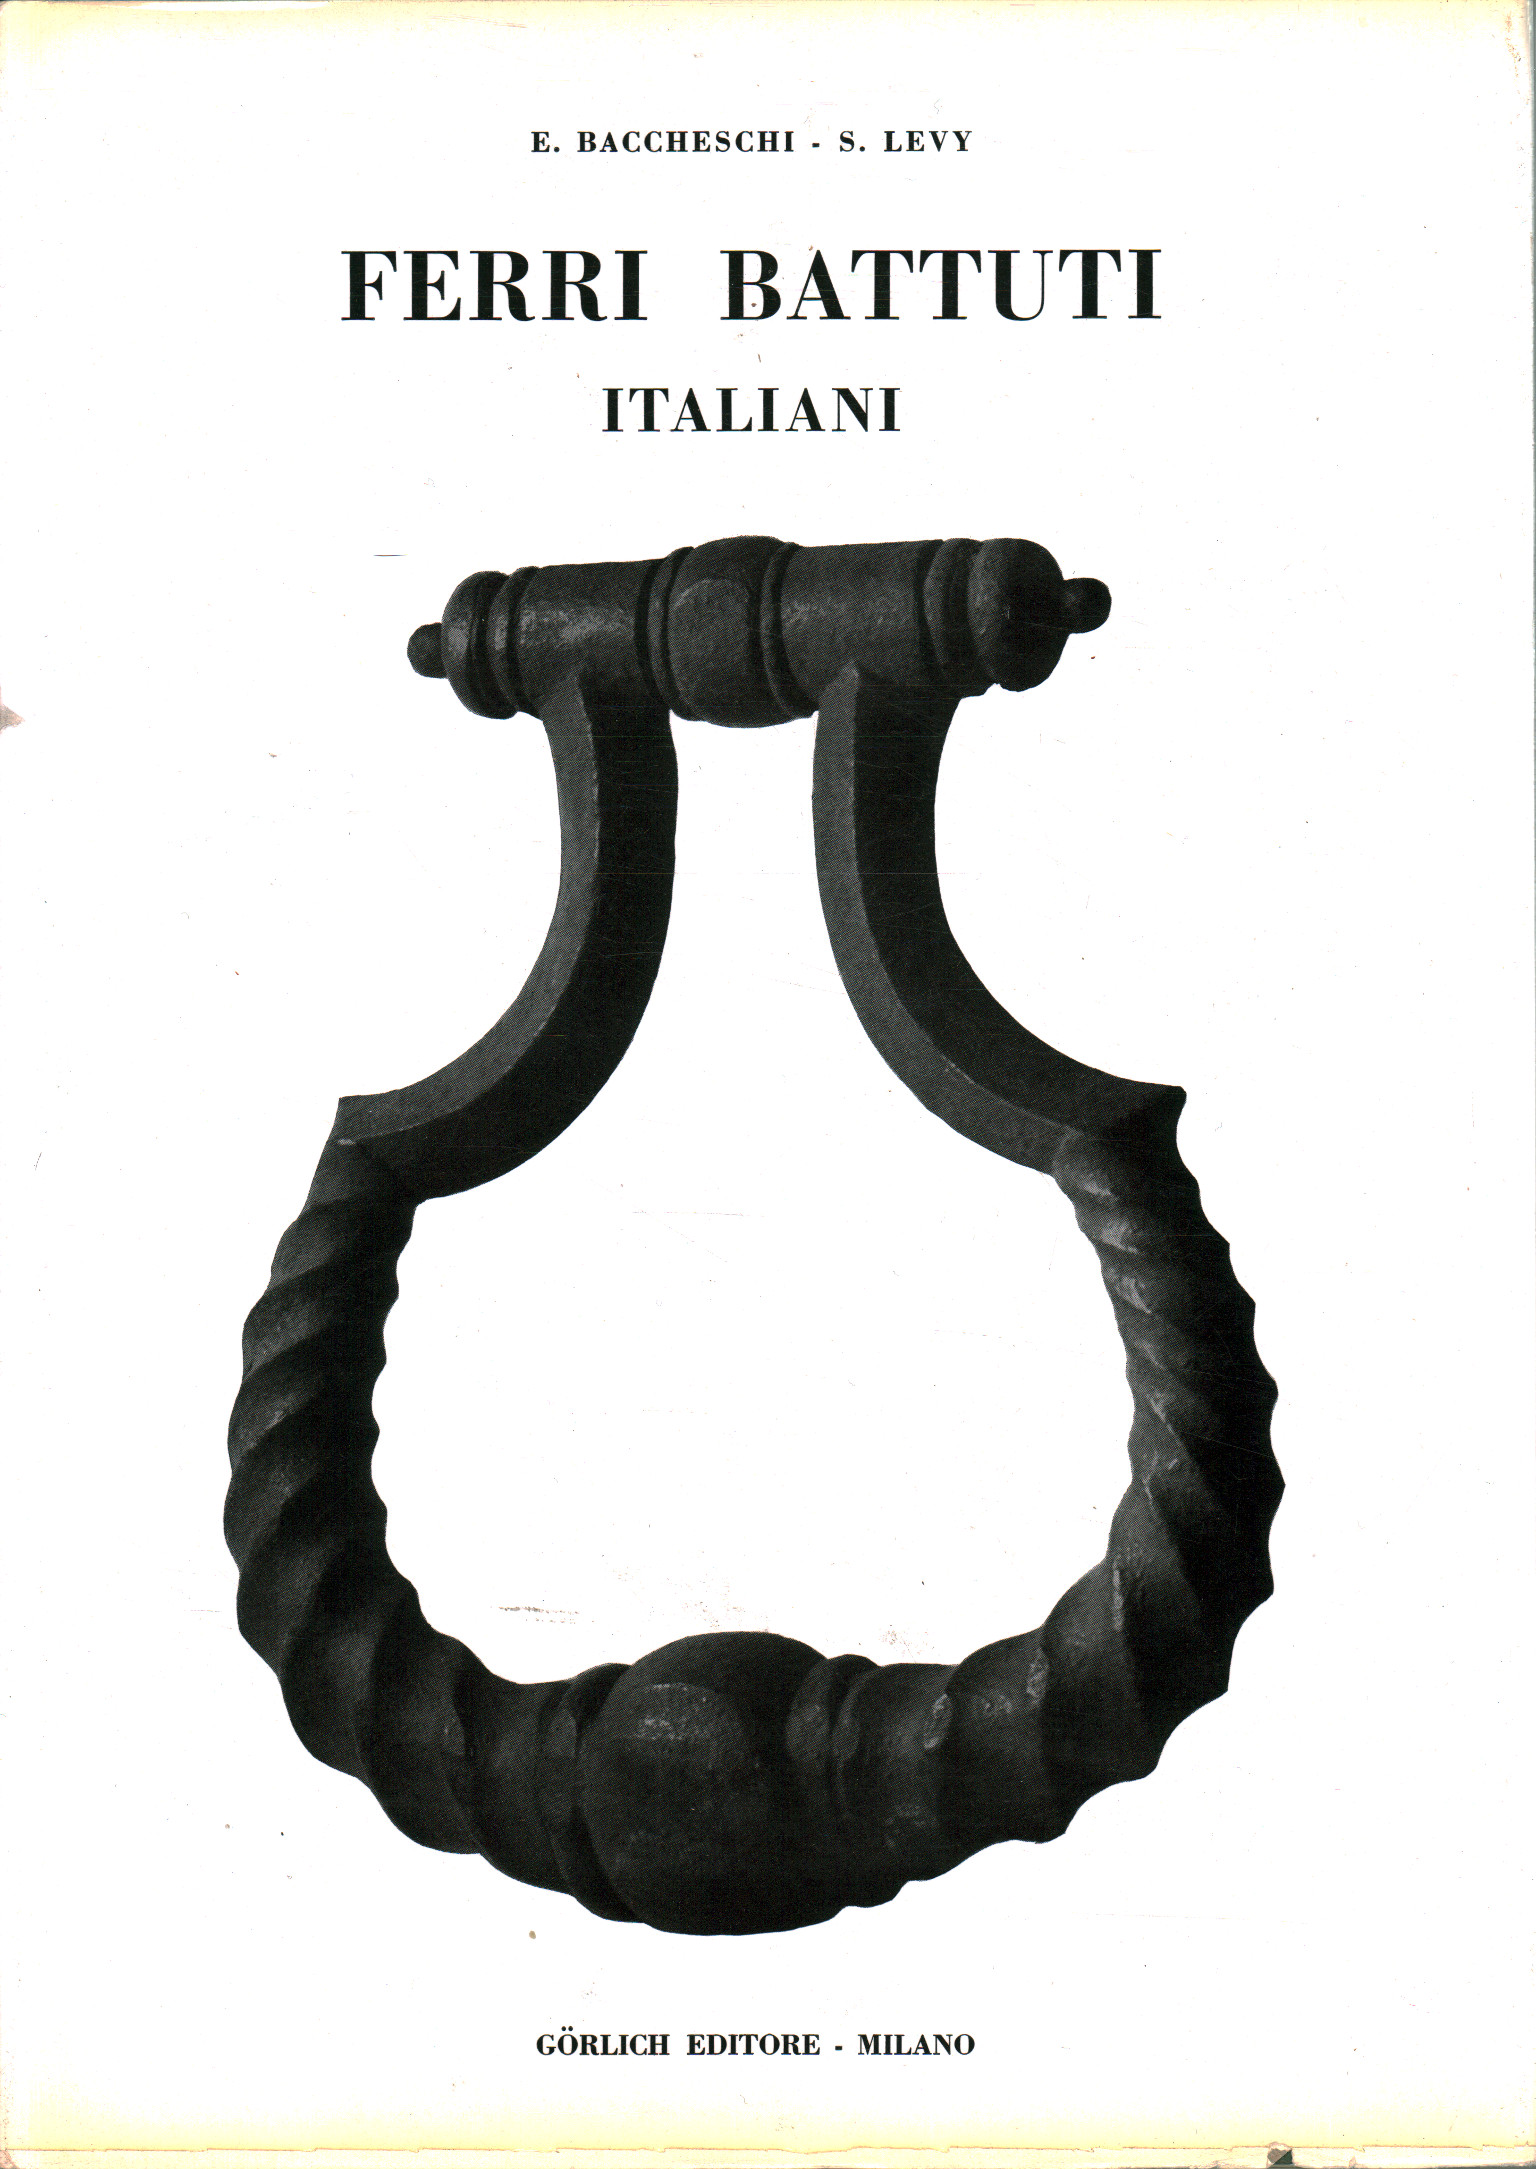 Italian wrought iron